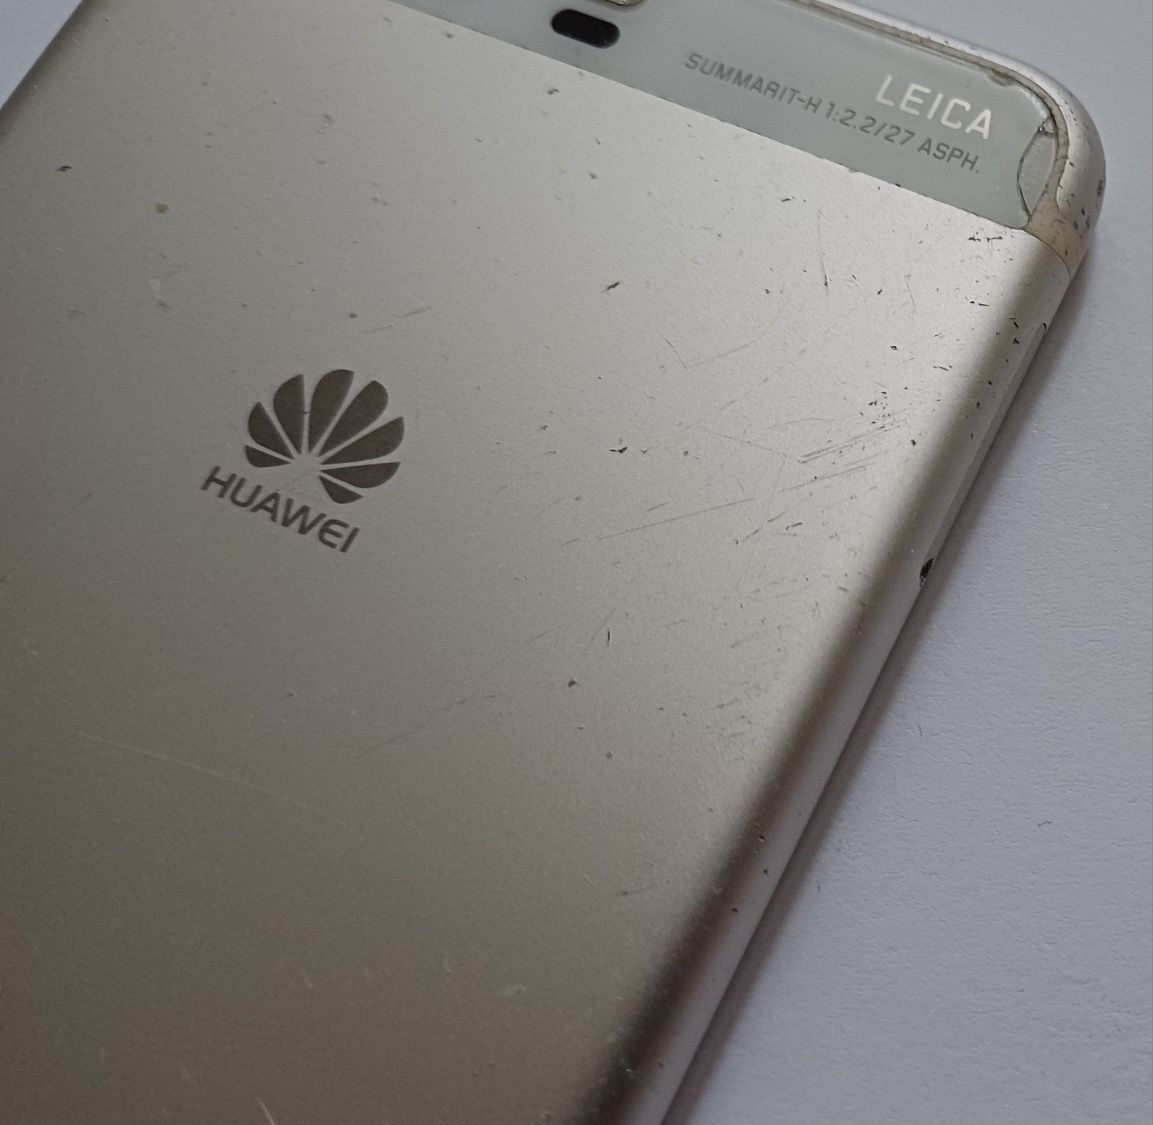 Huawei P10 biały 4/64 VTR-L29